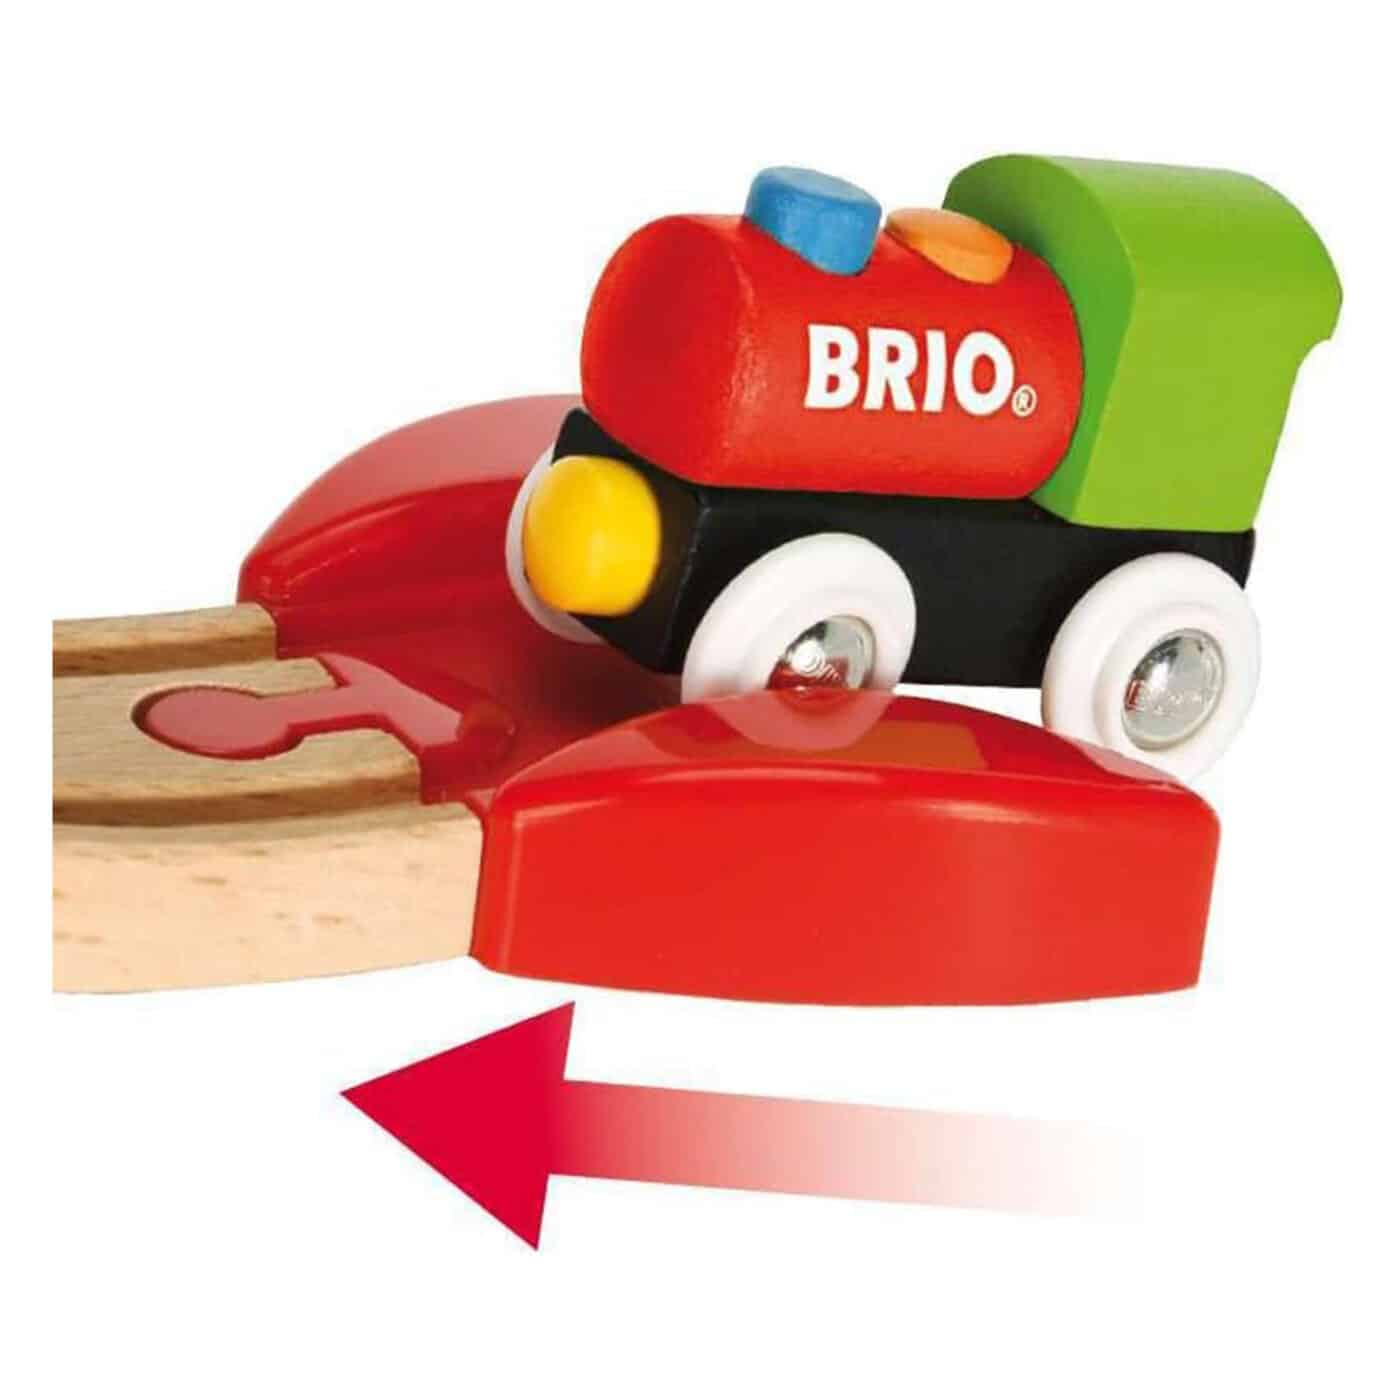 Brio - My First Railway Beginner Pack Playset - 18 Pieces3